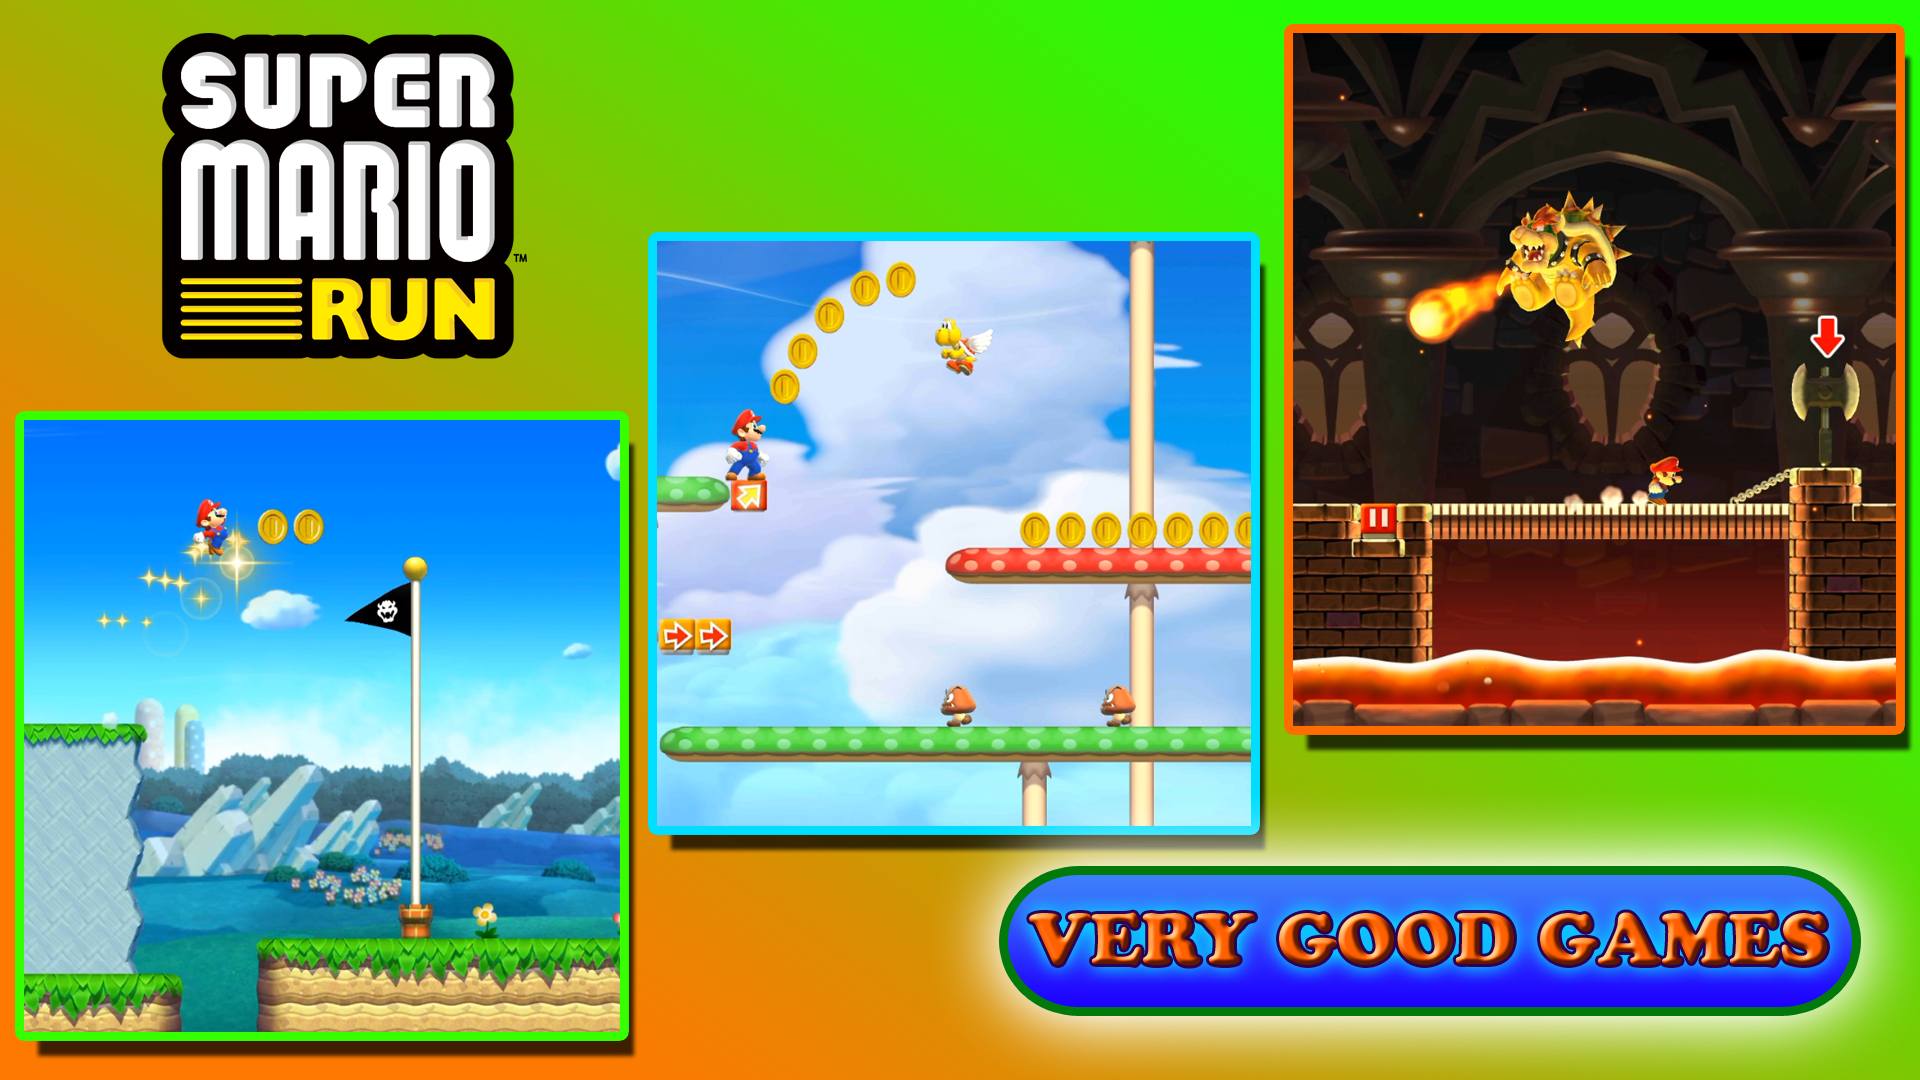 Gameplay of Super Mario Run - game screenshots